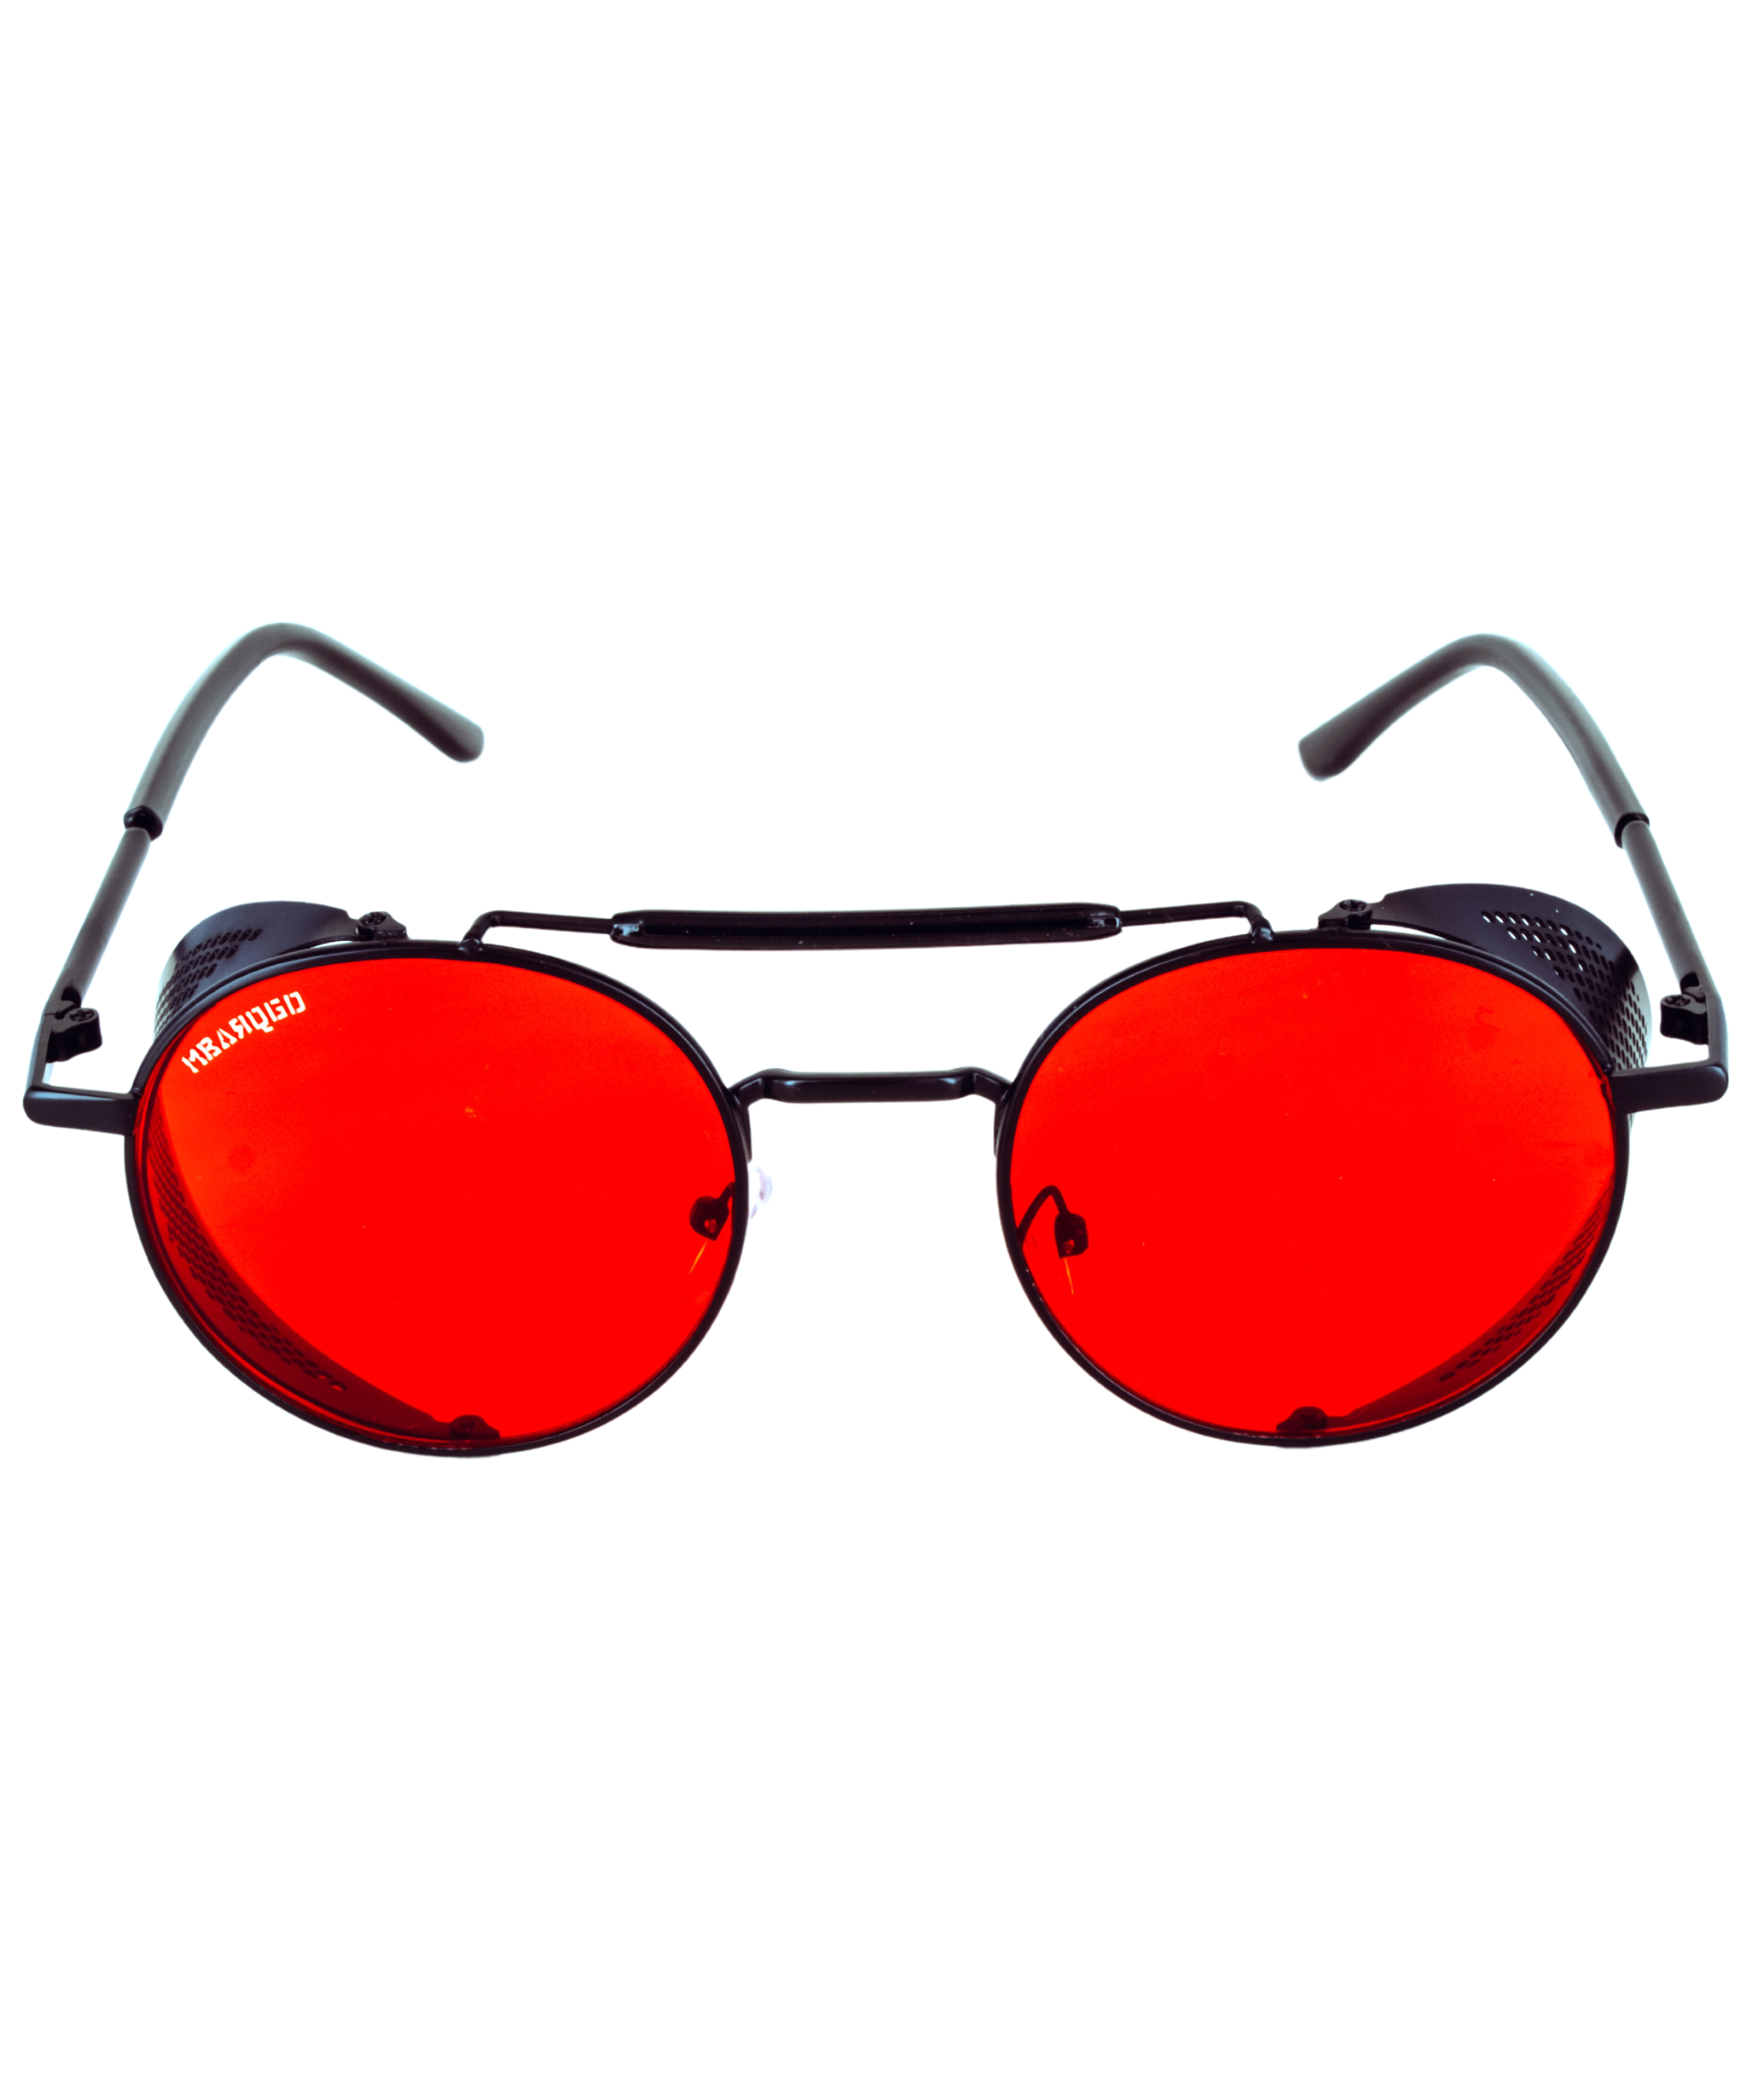 The Evasion Eyewear - Crimson